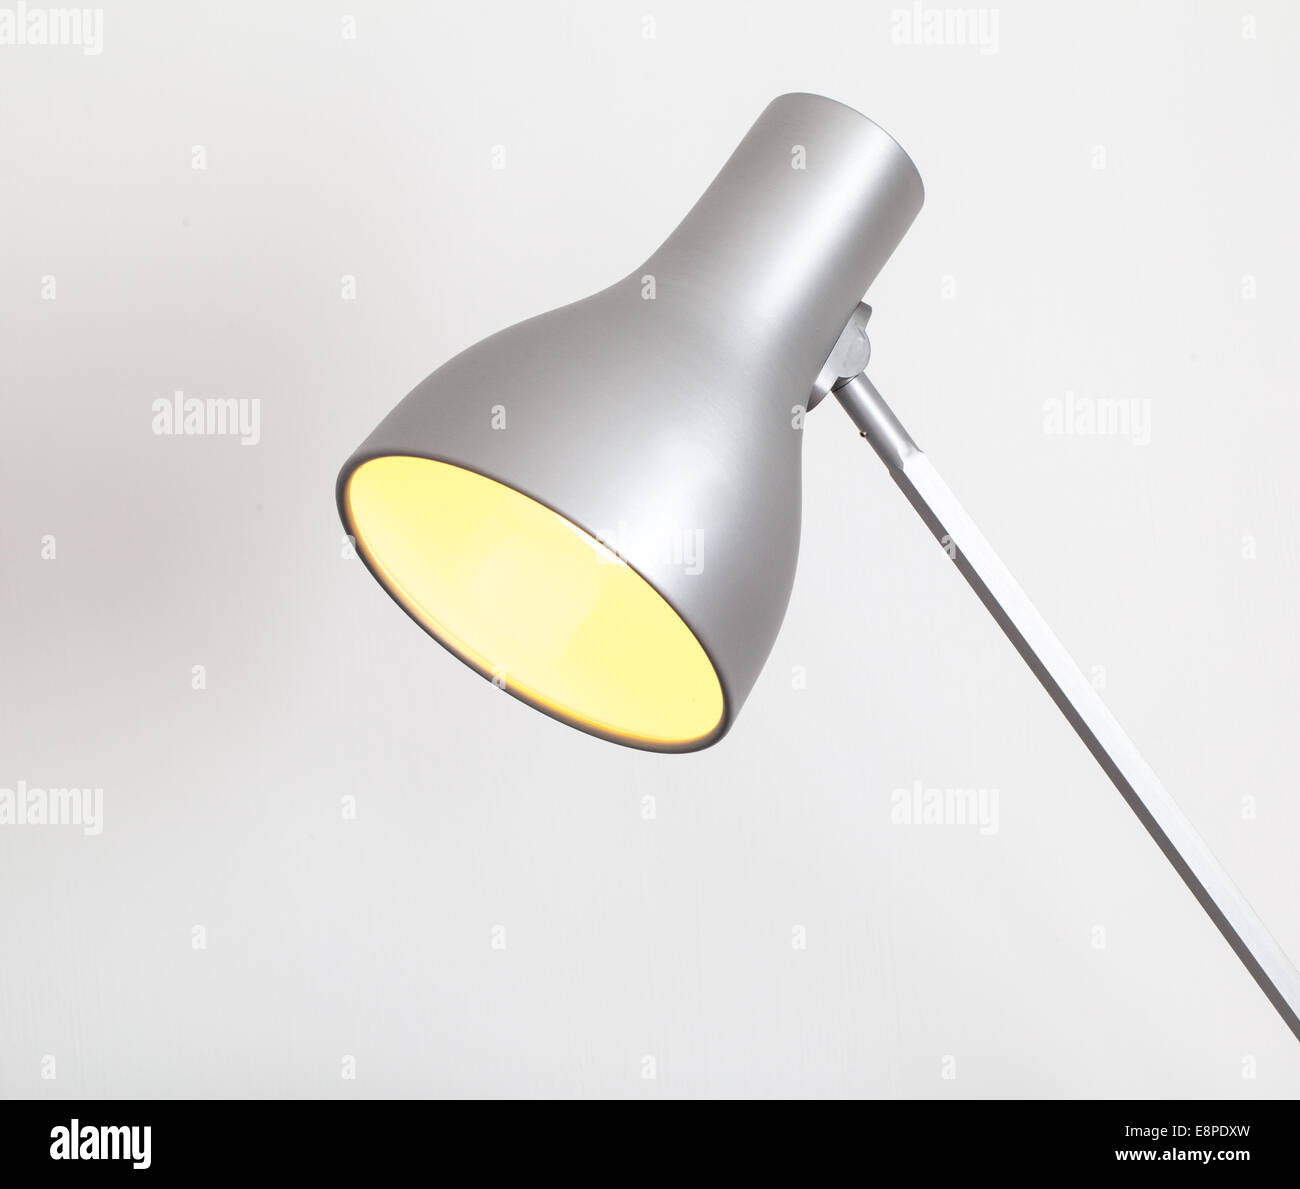 Lampe avec ampoule à économie d'énergie allumé Banque D'Images